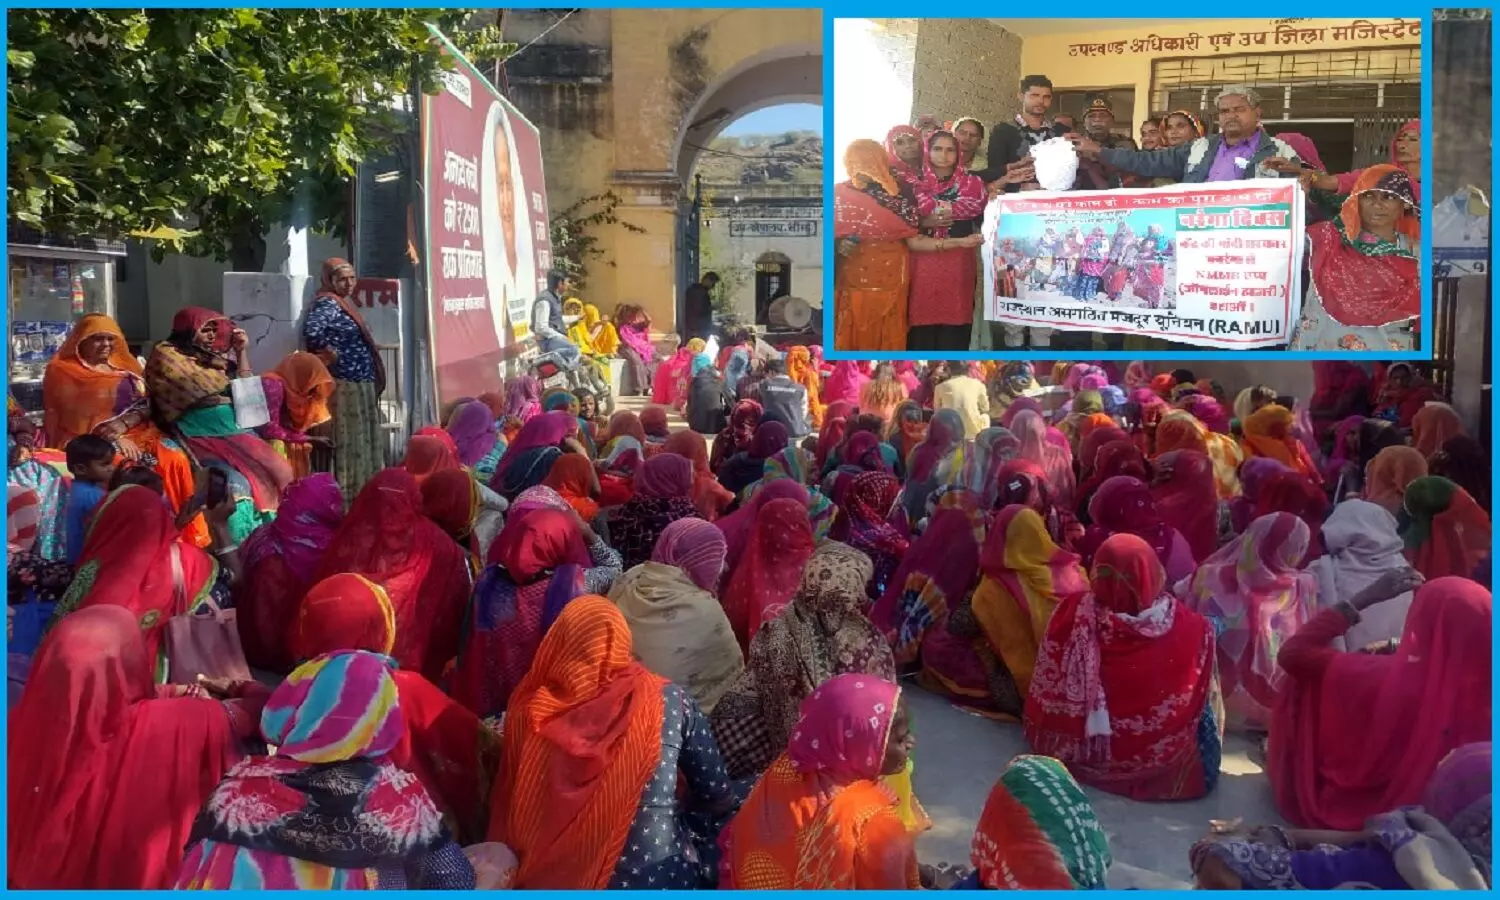 बजट में कम पैसा देकर नरेगा को ख़त्म कर रही है मोदी सरकार, राजस्थान के 30 जिलों में 88 स्थानों पर रैली निकालकर पीएम मोदी के नाम ज्ञापन